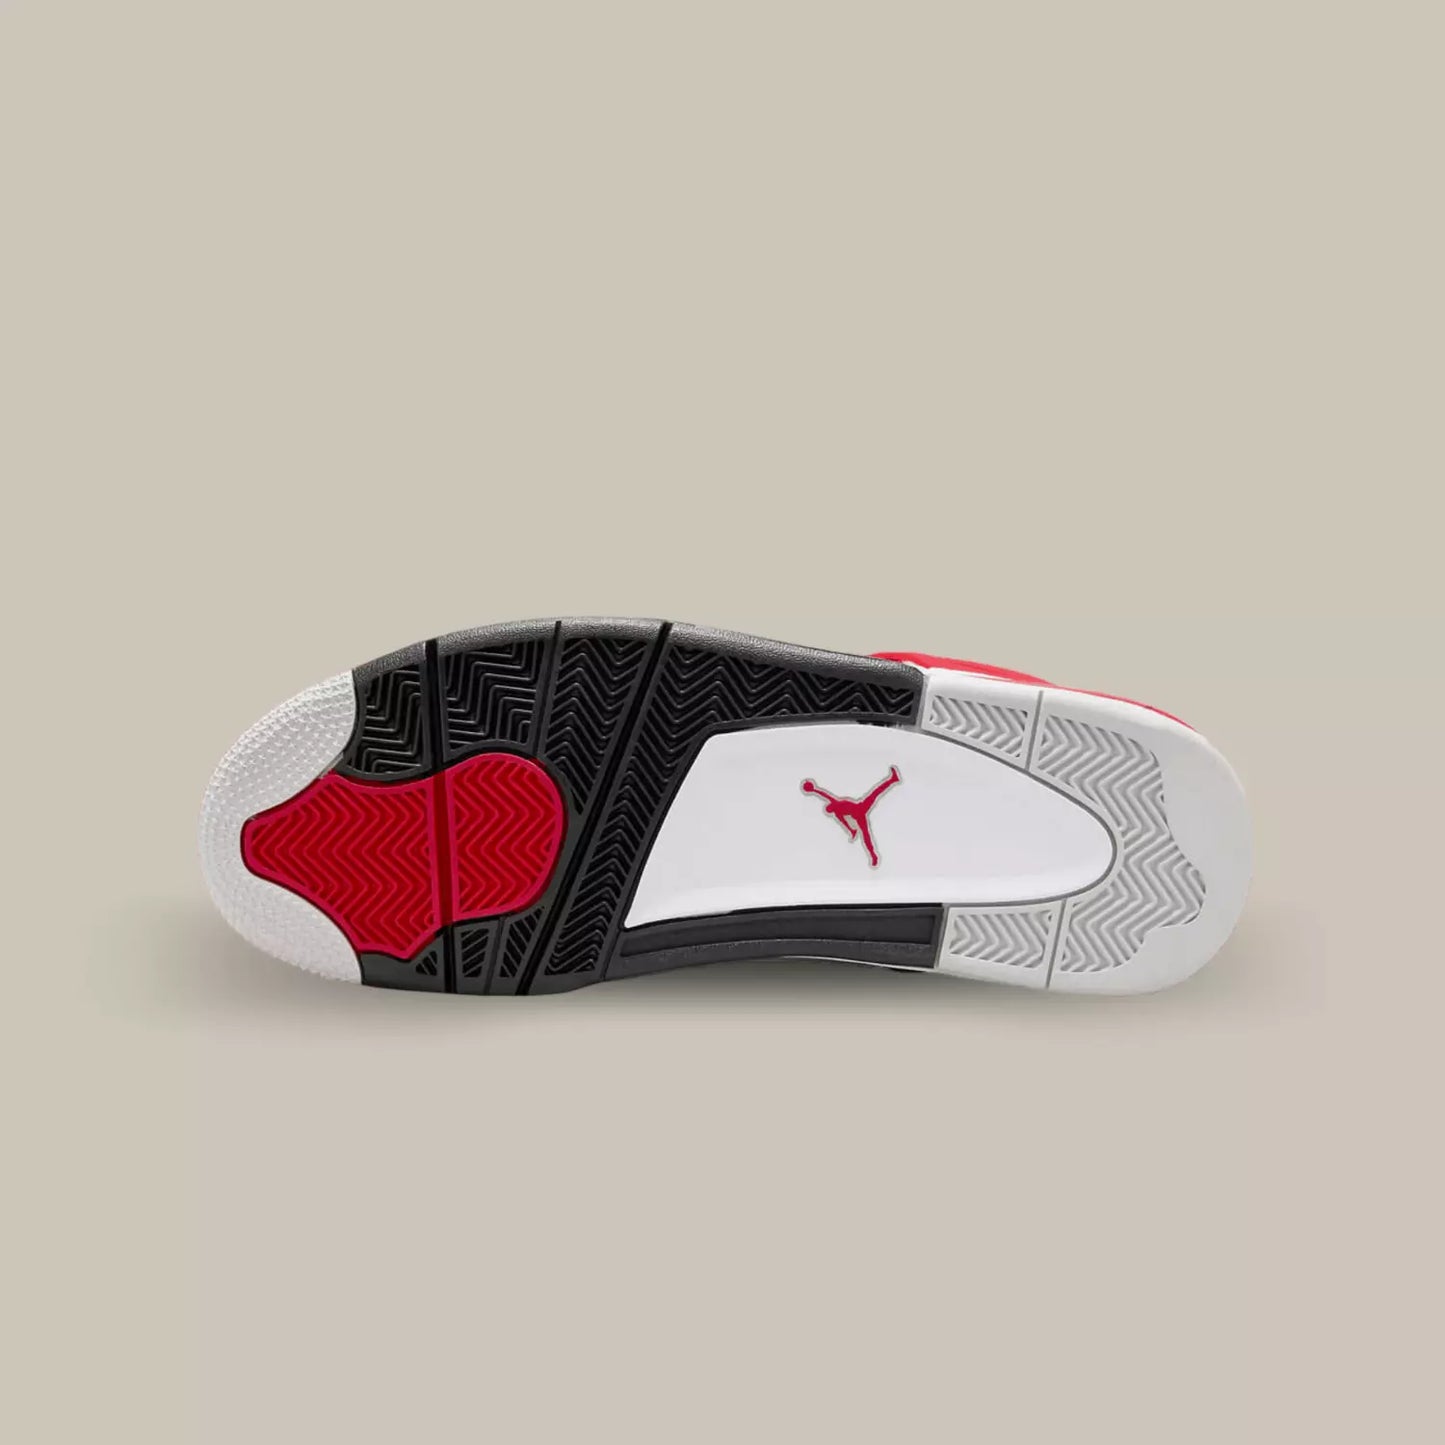 La semelle de La Jordan 4 Red Cement de couleur gris, blanc, noir et rouge.